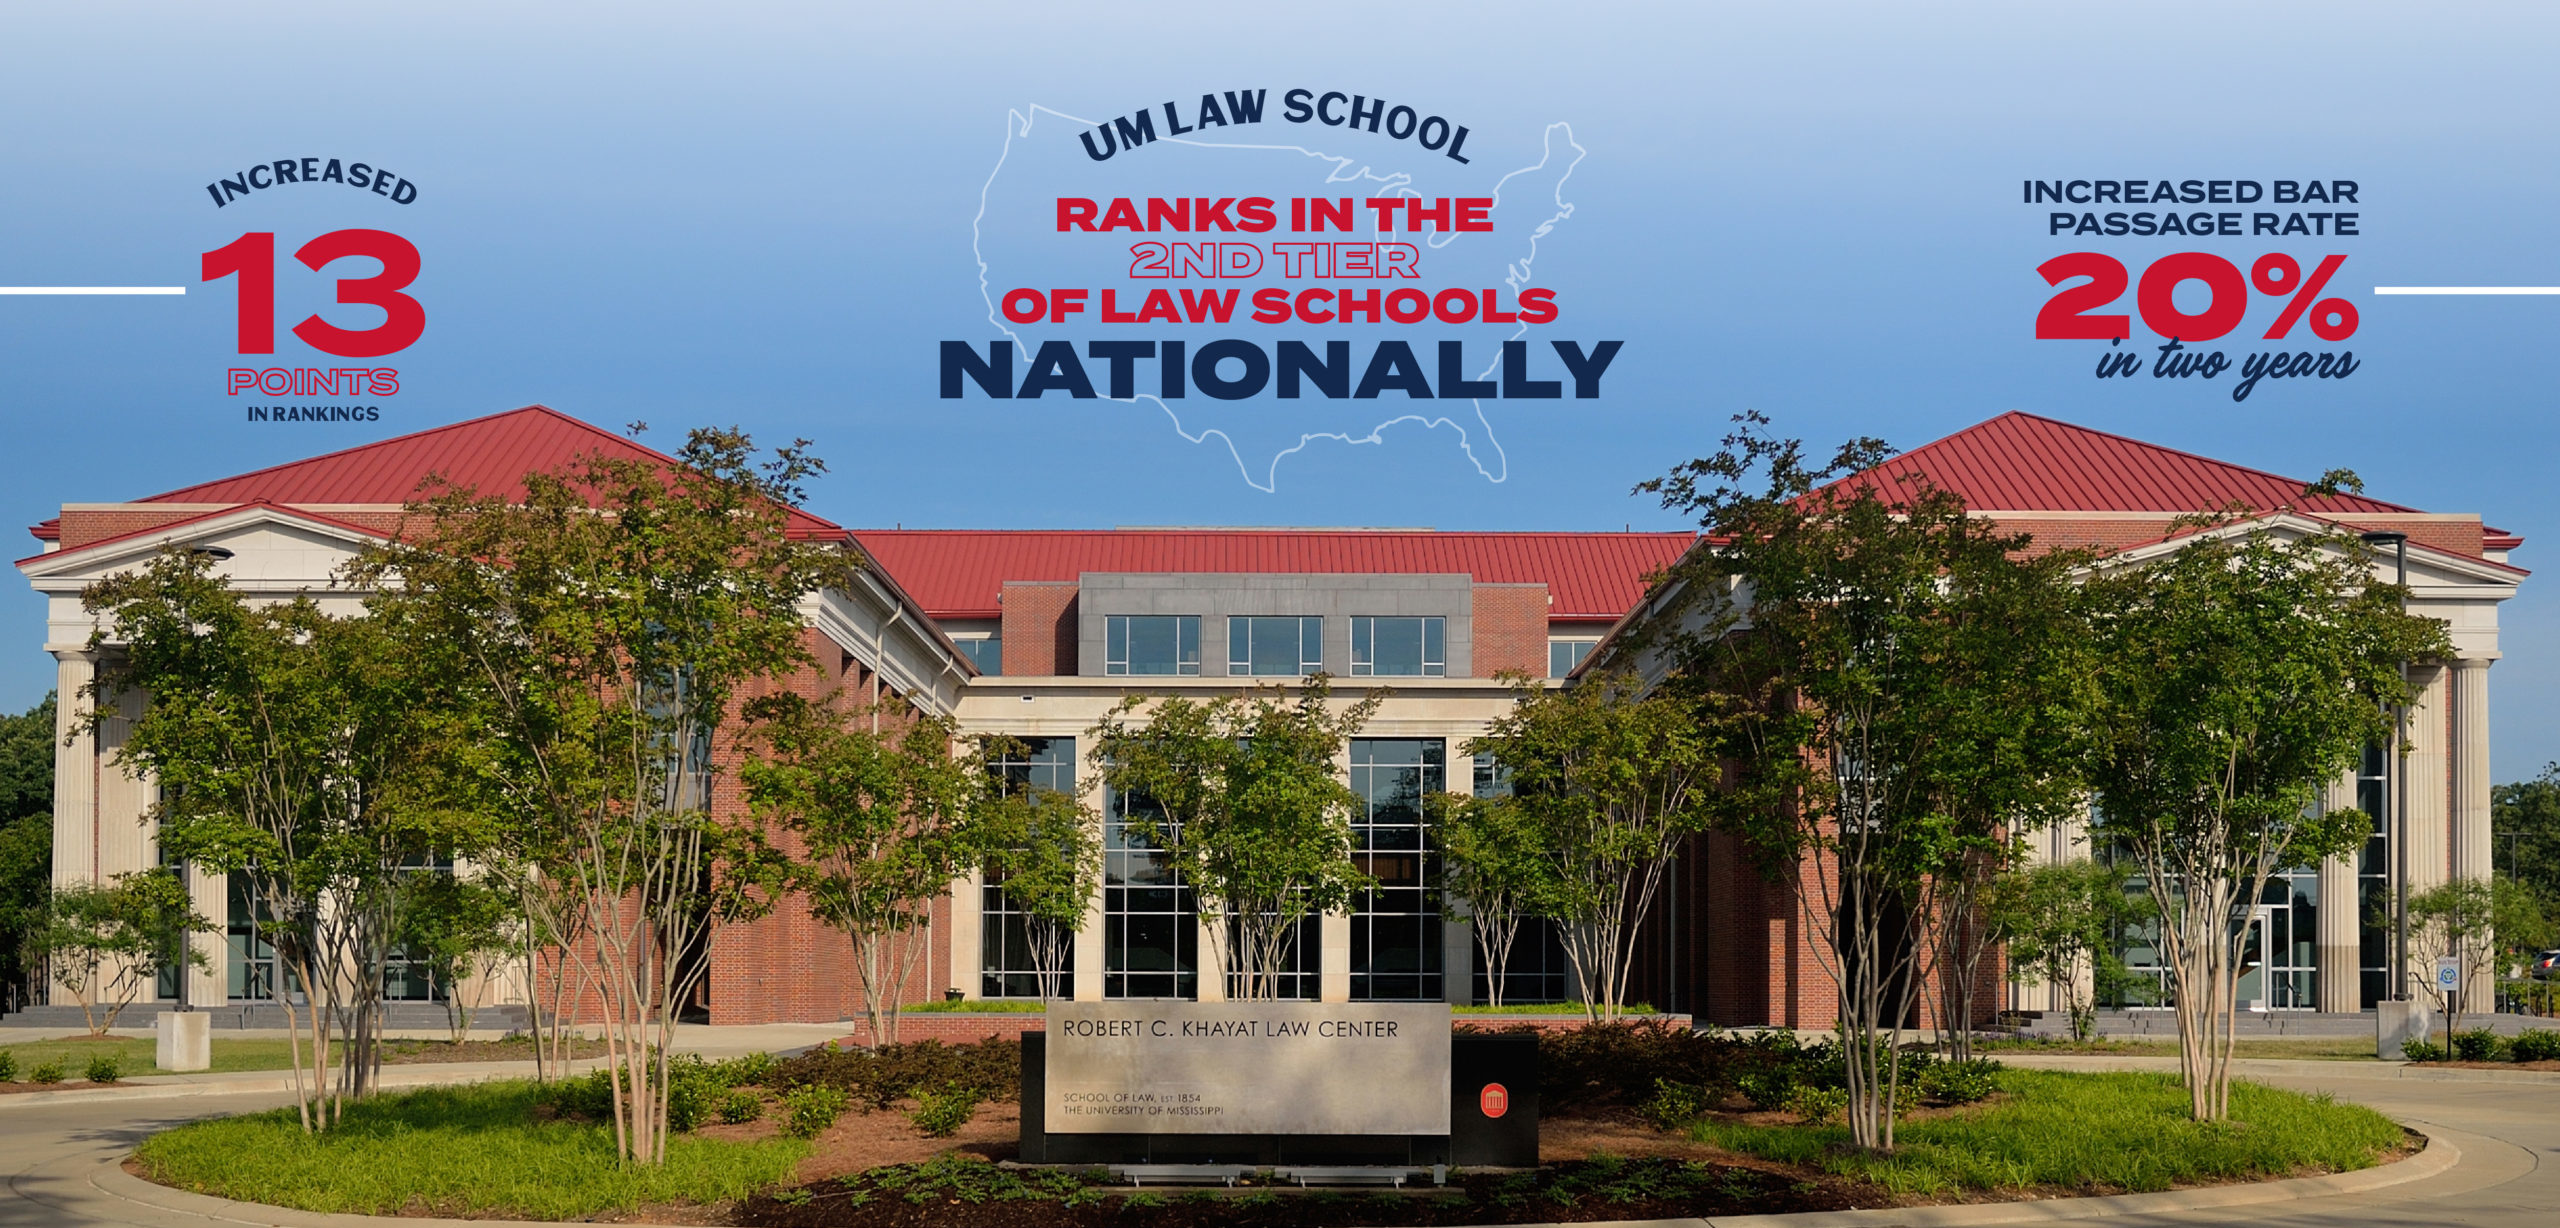 um-law-climbs-13-spots-in-u-s-news-law-school-rankings-school-of-law